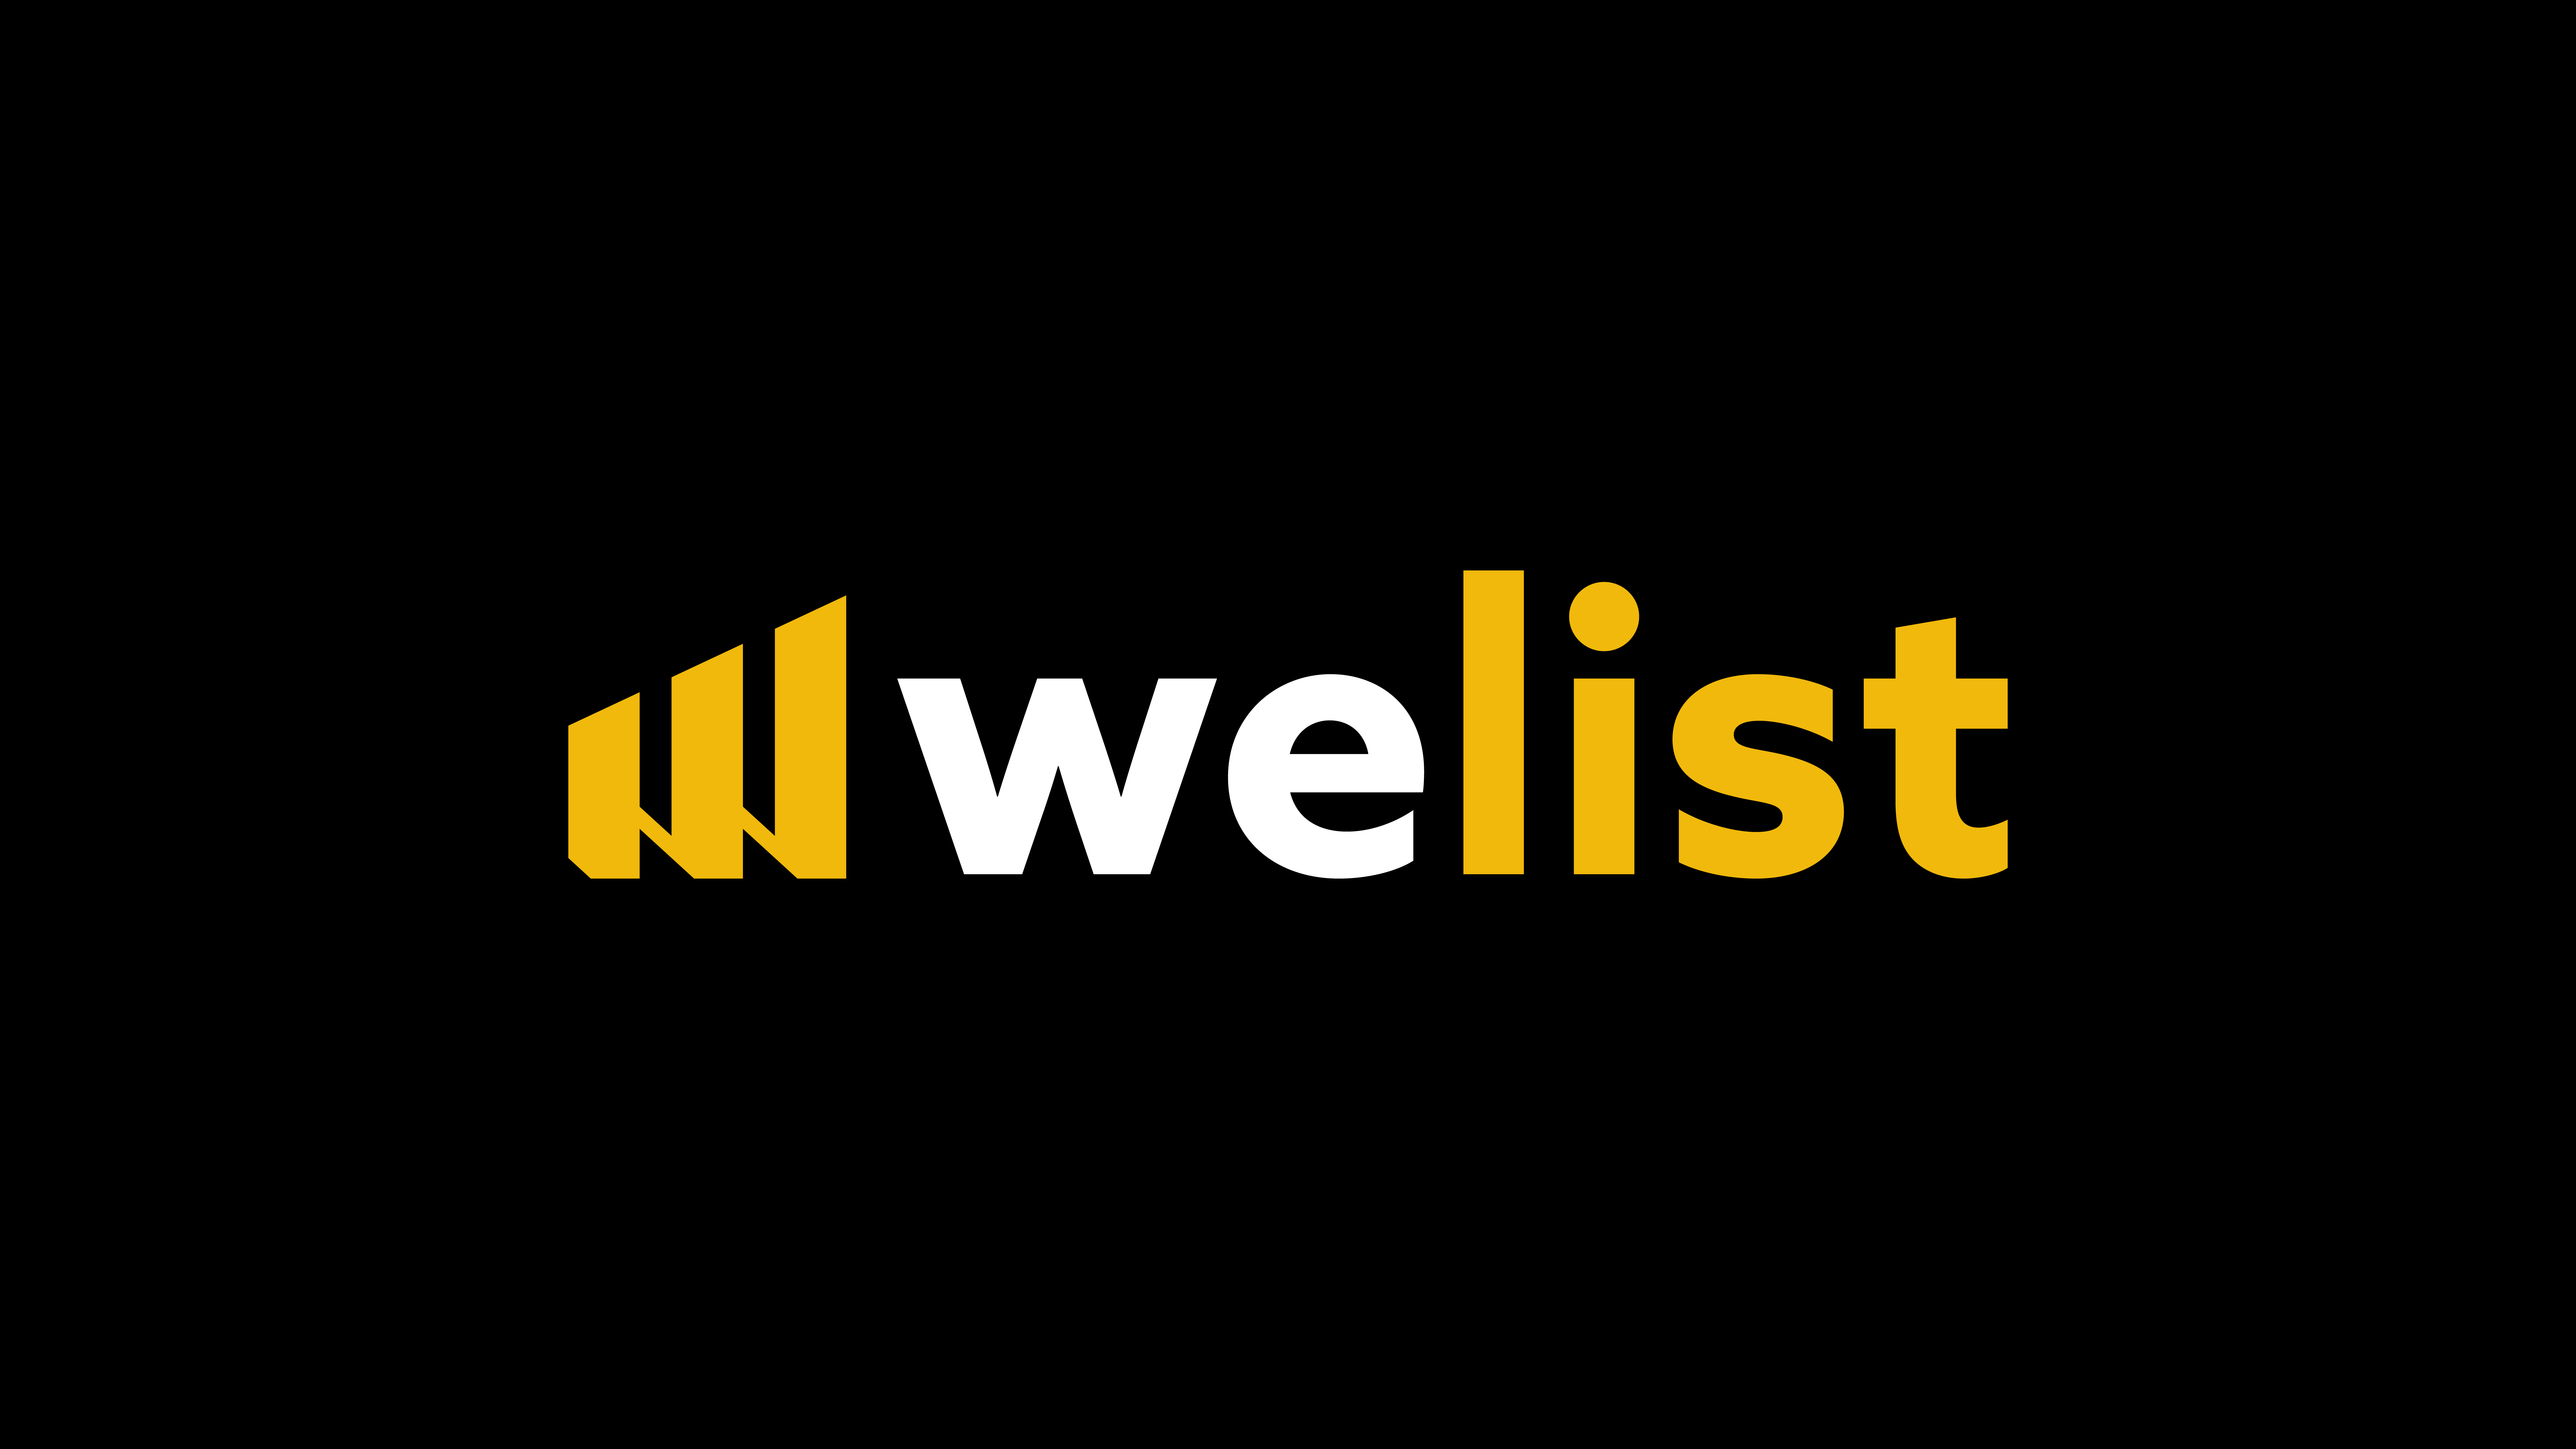 Welist Ventures